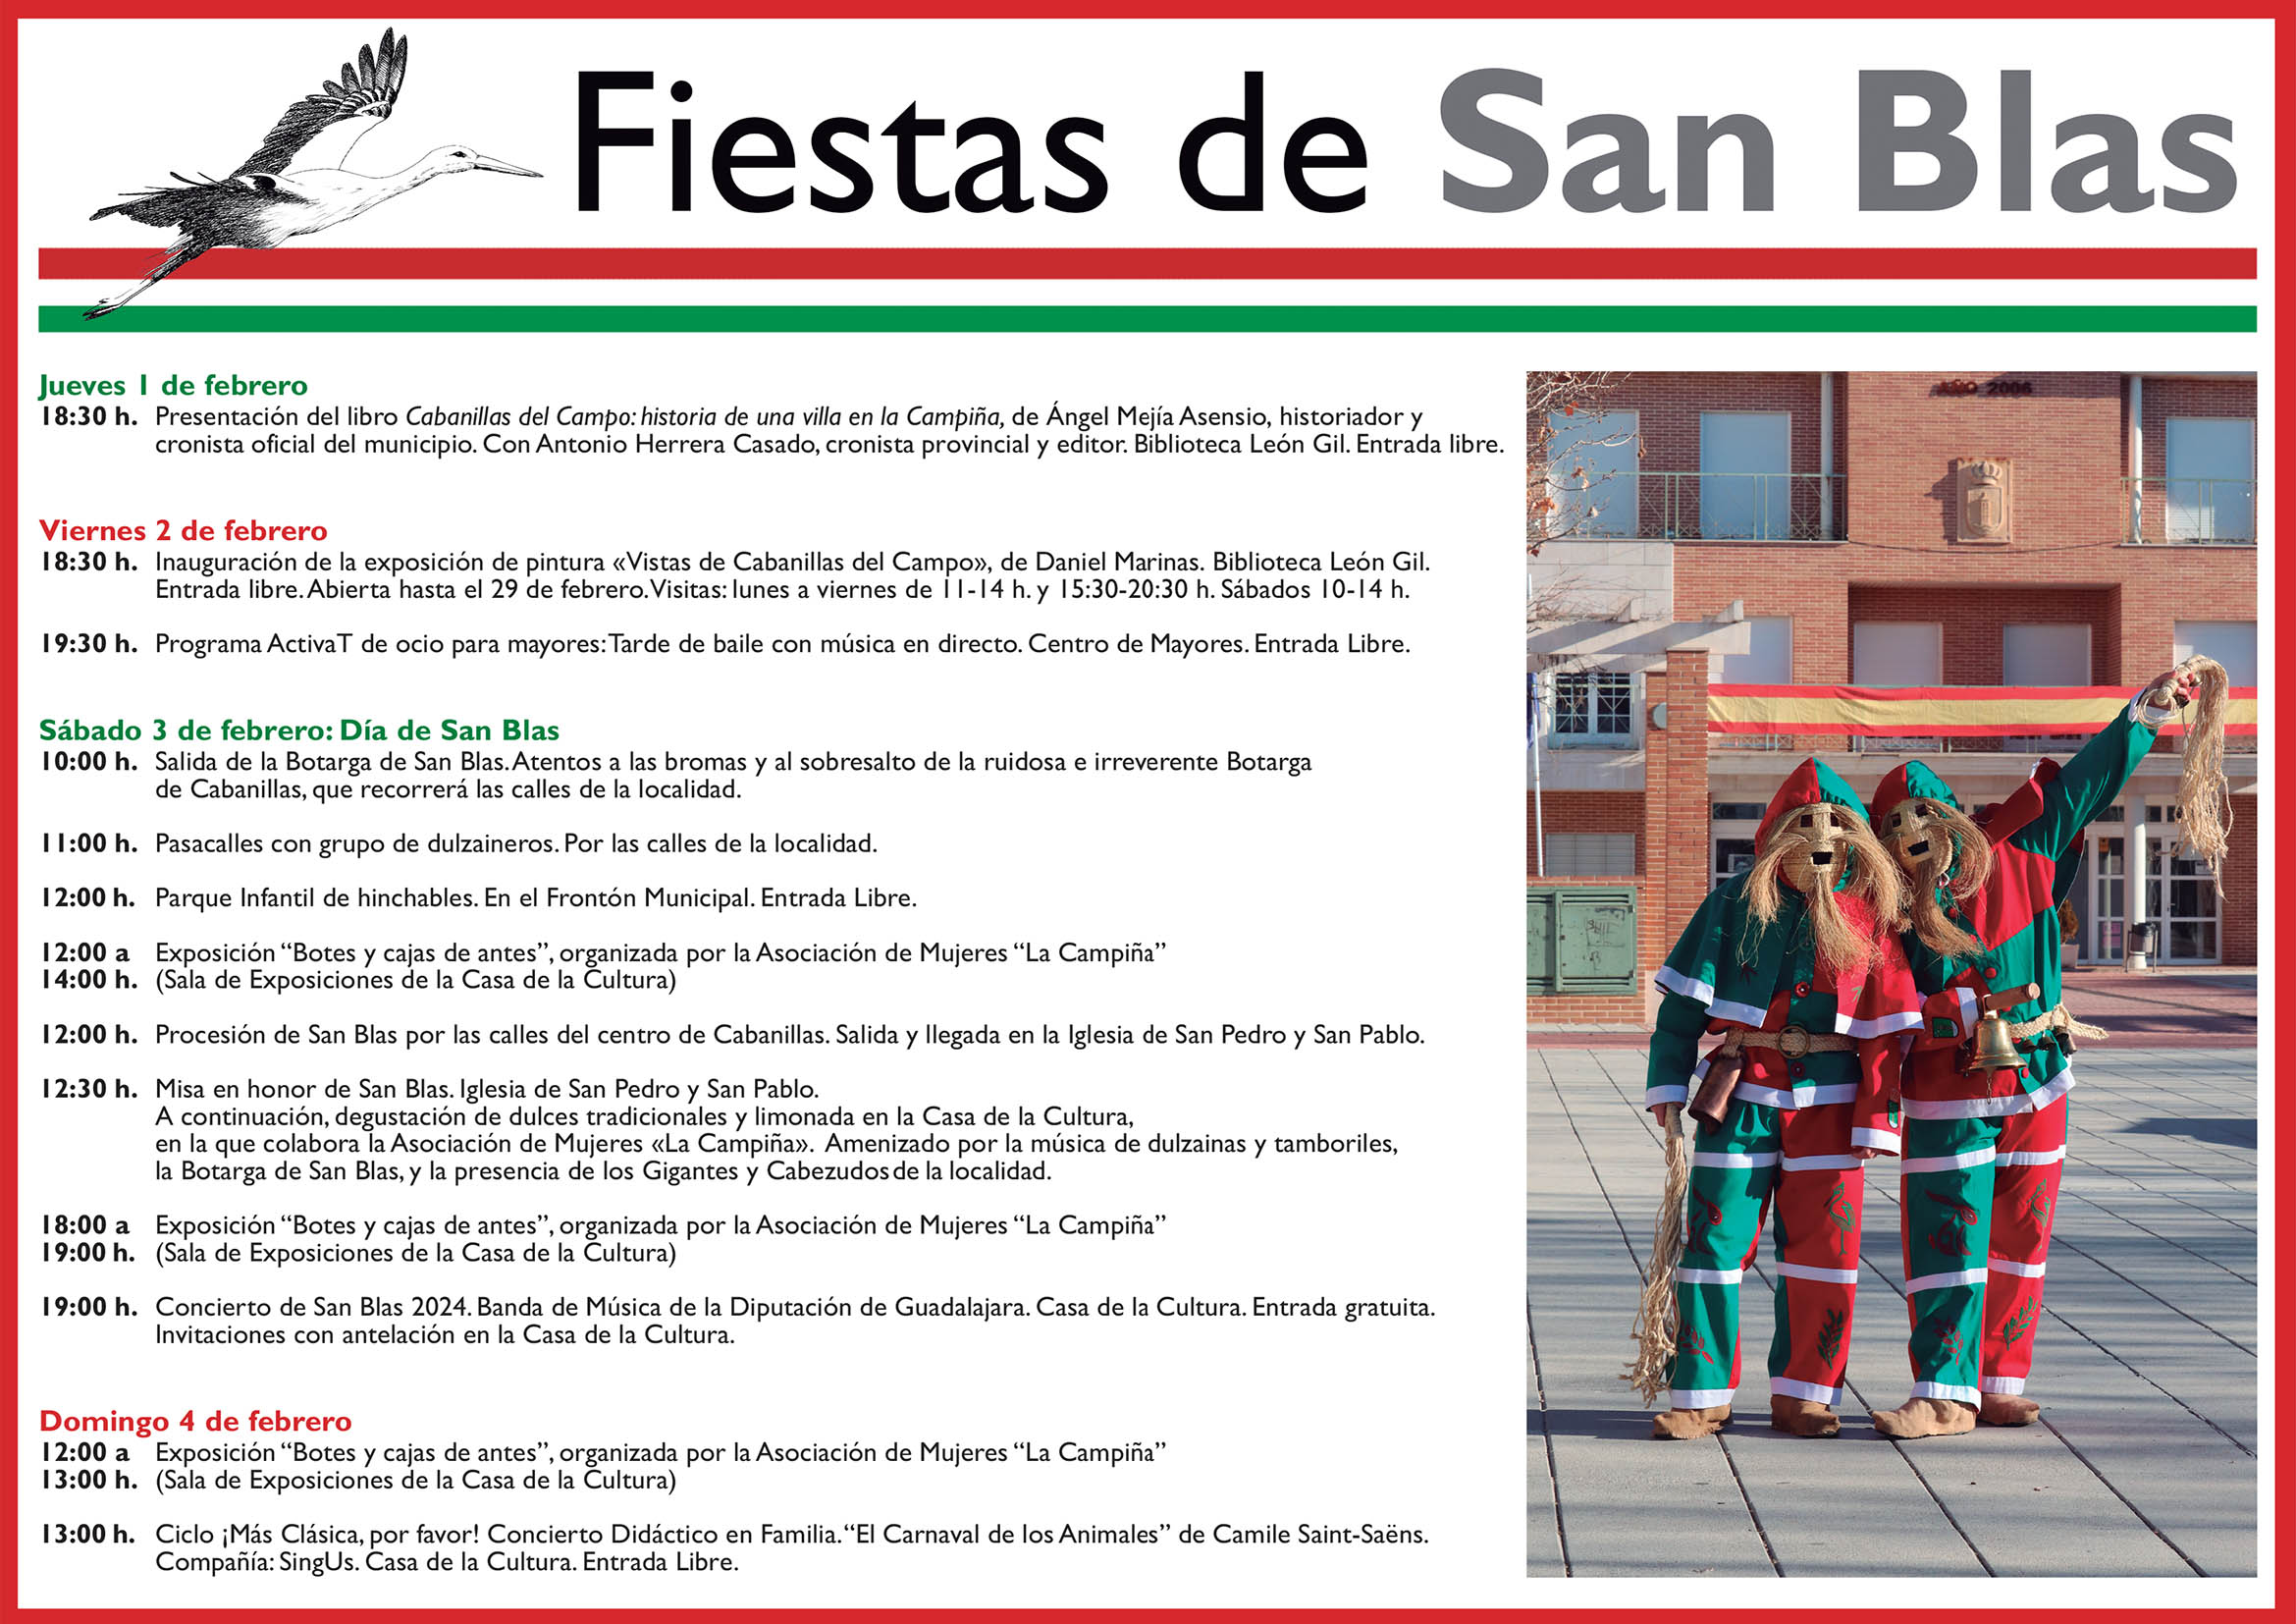 Fiestas de San Blas en Cabanillas del Campo: Celebración Cultural y Religiosa del 1 al 4 de febrero